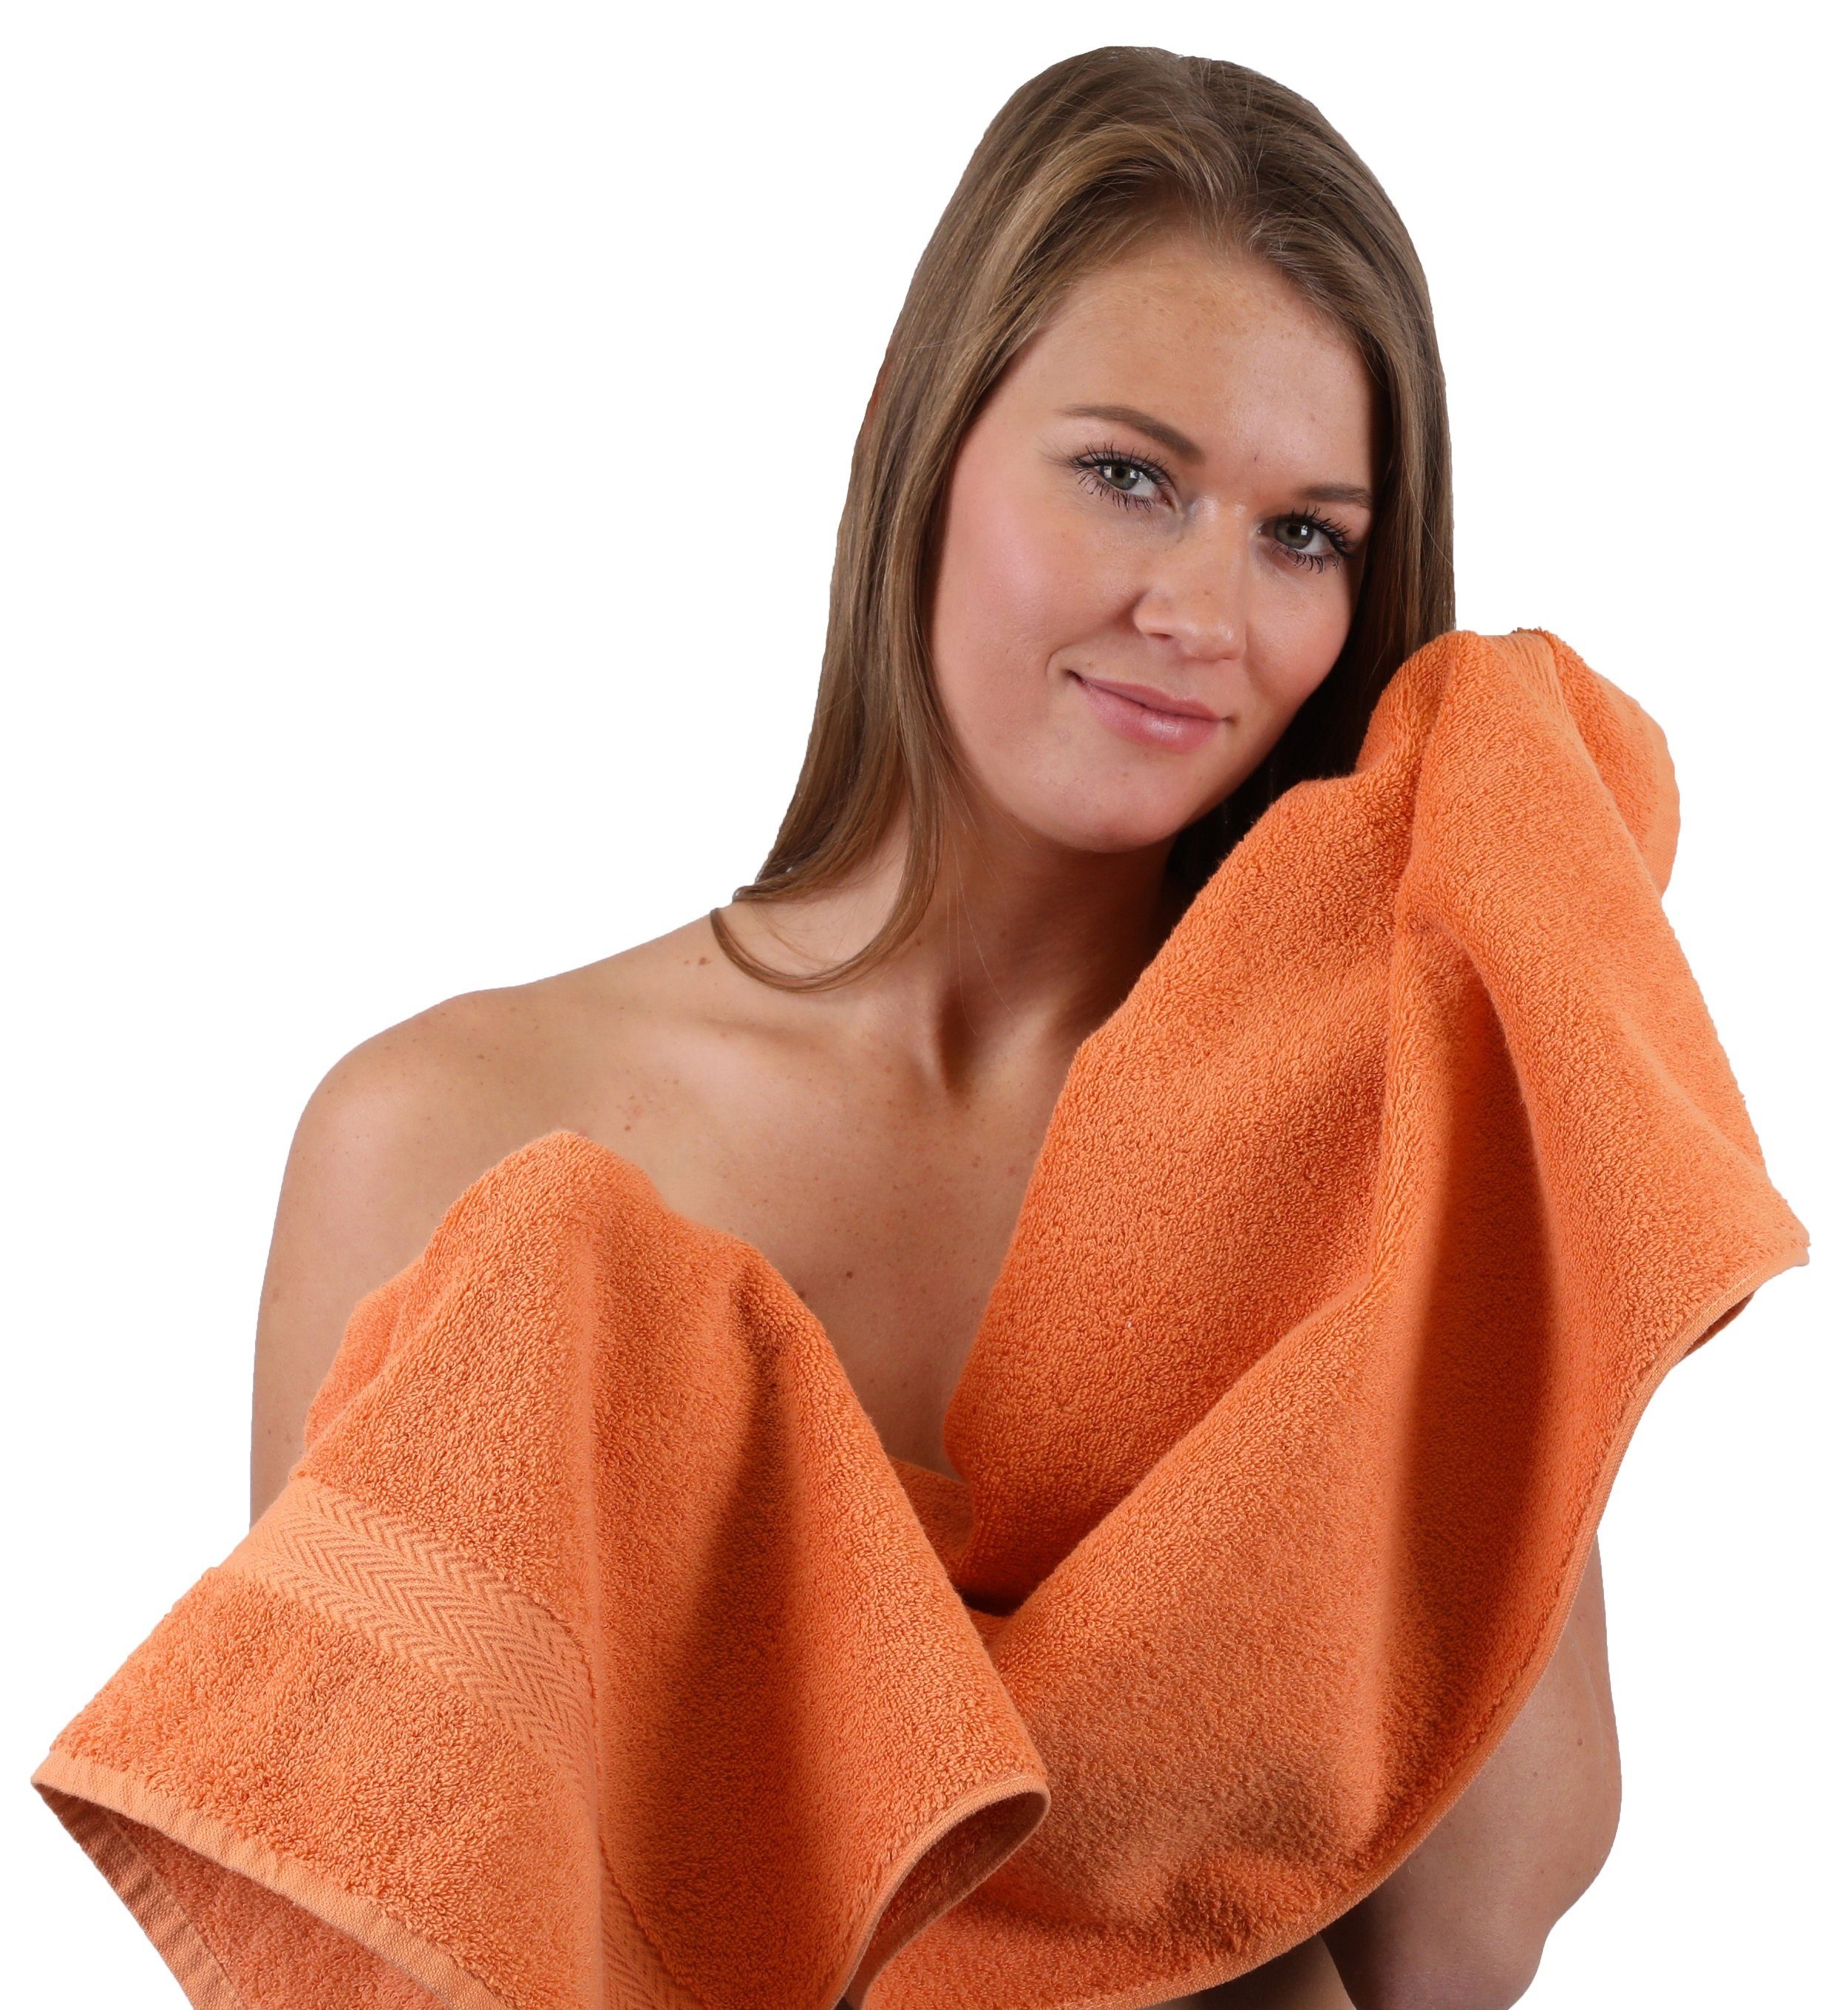 Betz Handtuch 100% Baumwolle, Farbe Orange (10-tlg) Set & Premium Silbergrau, Handtuch-Set 10-TLG